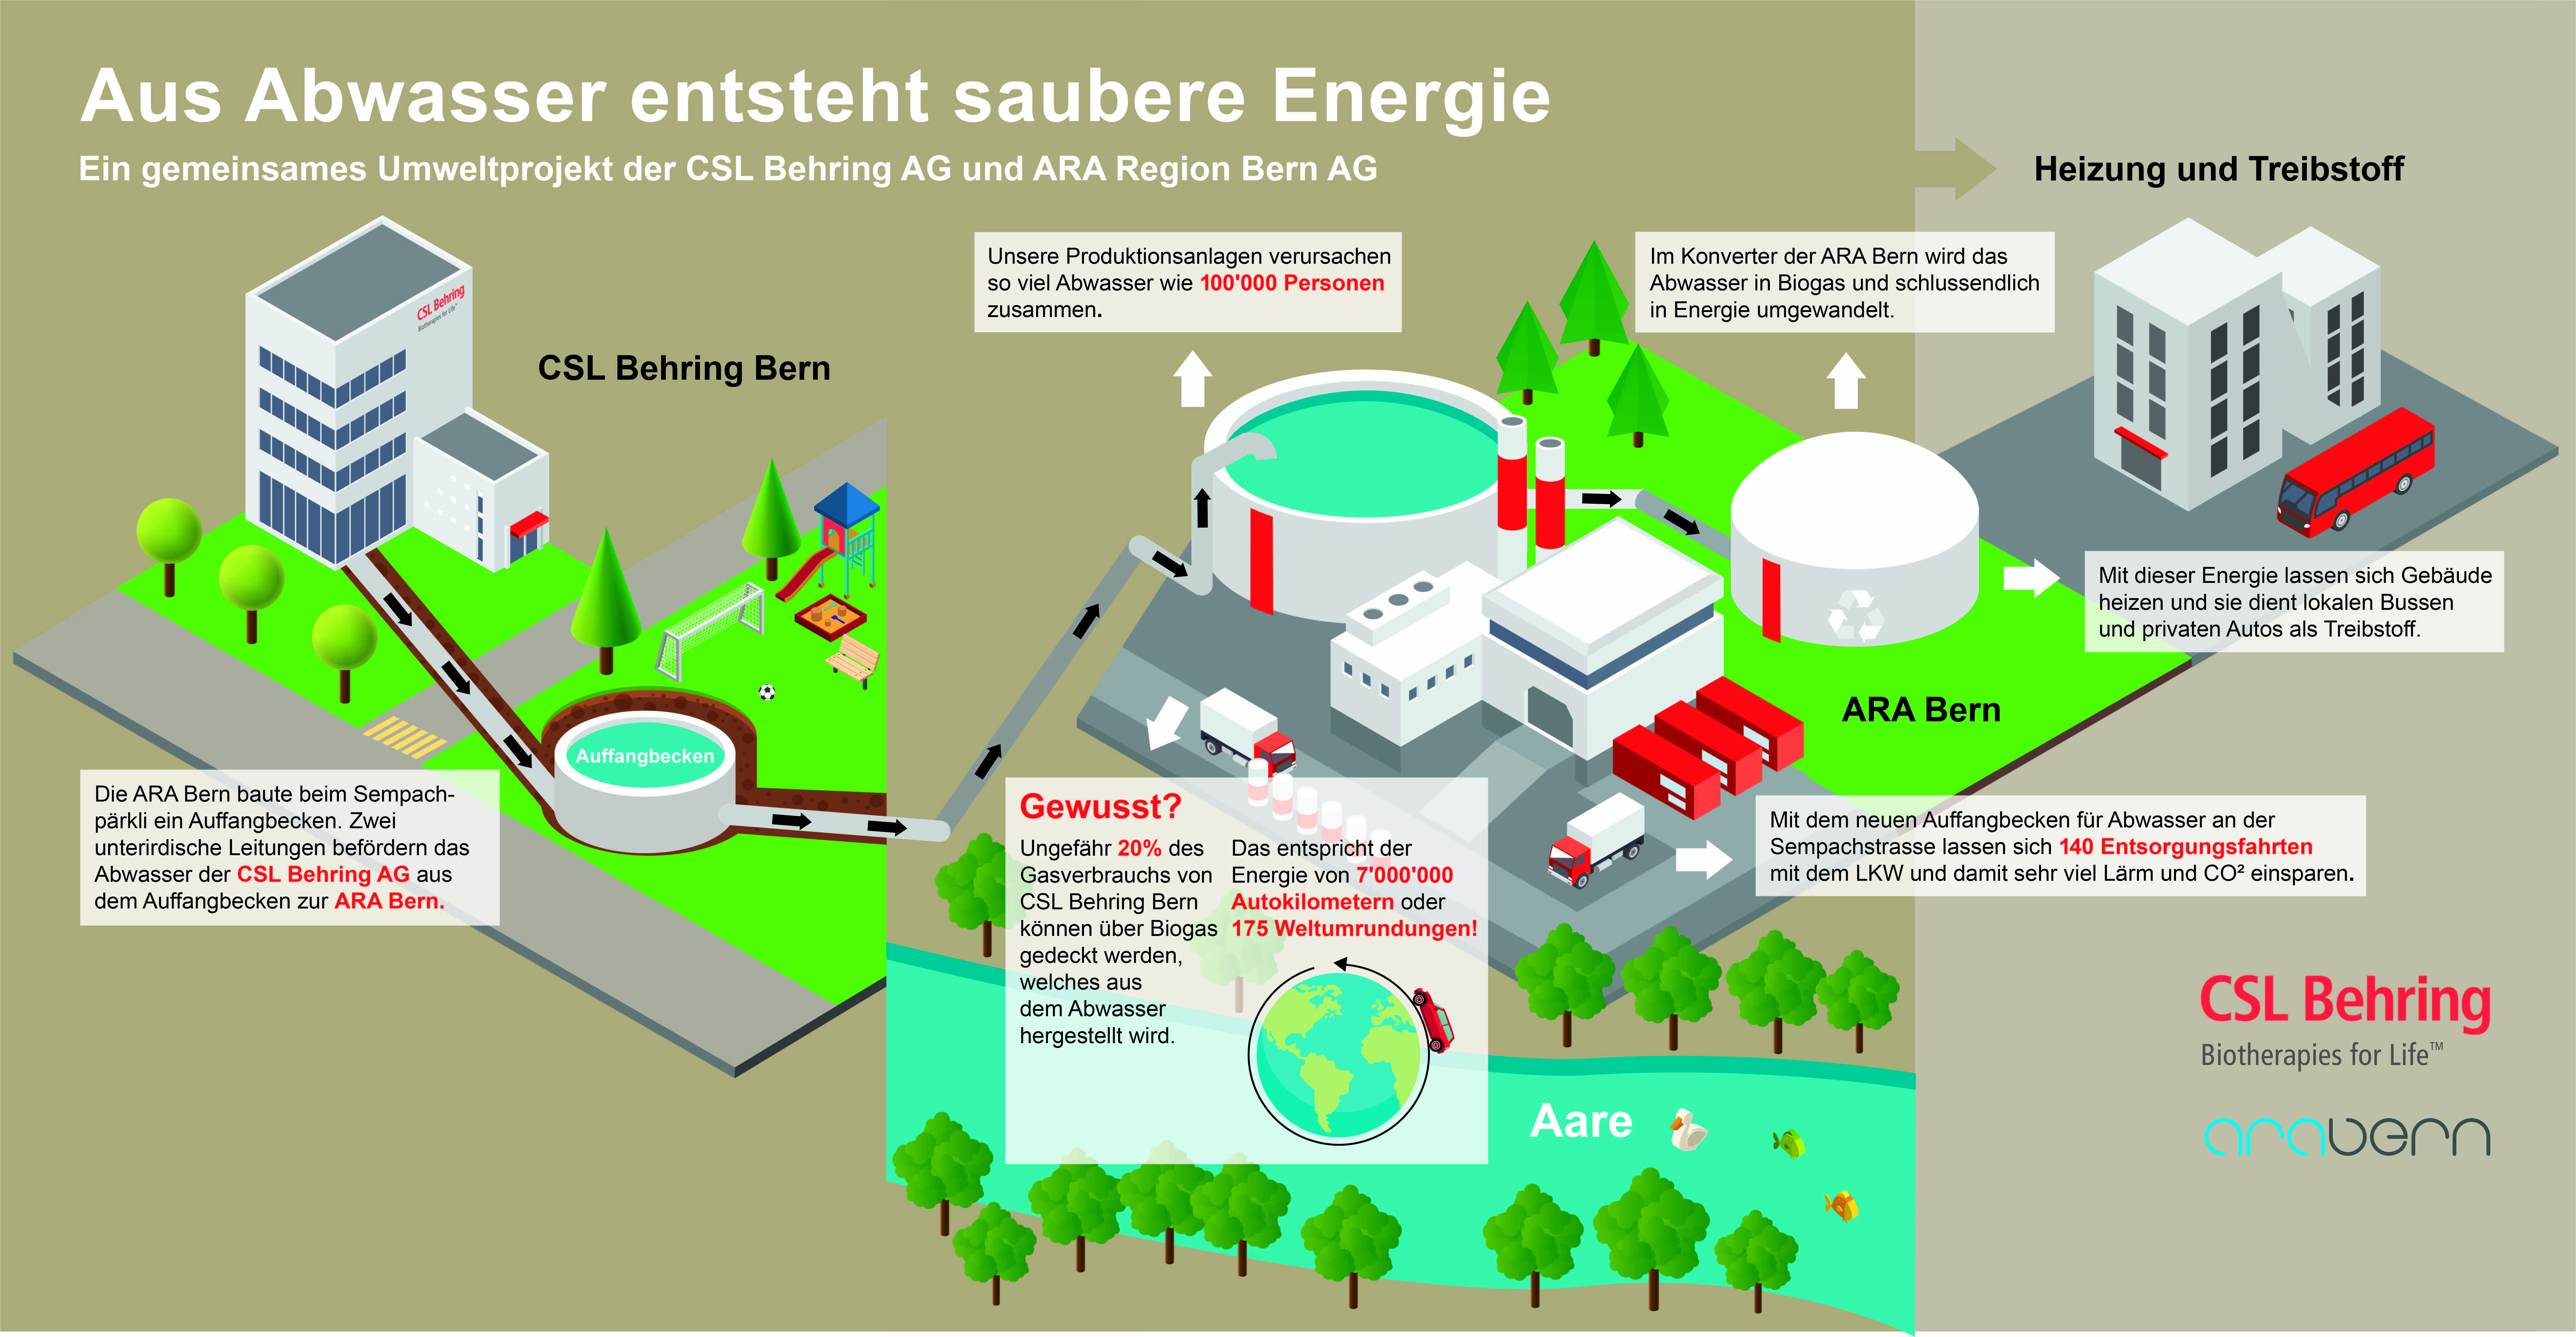 Aus Abwasser entsteht saubere Energie: Ein gemeinsames Umweltprojekt von CSL Behring AG und der ARA Region Bern AG.